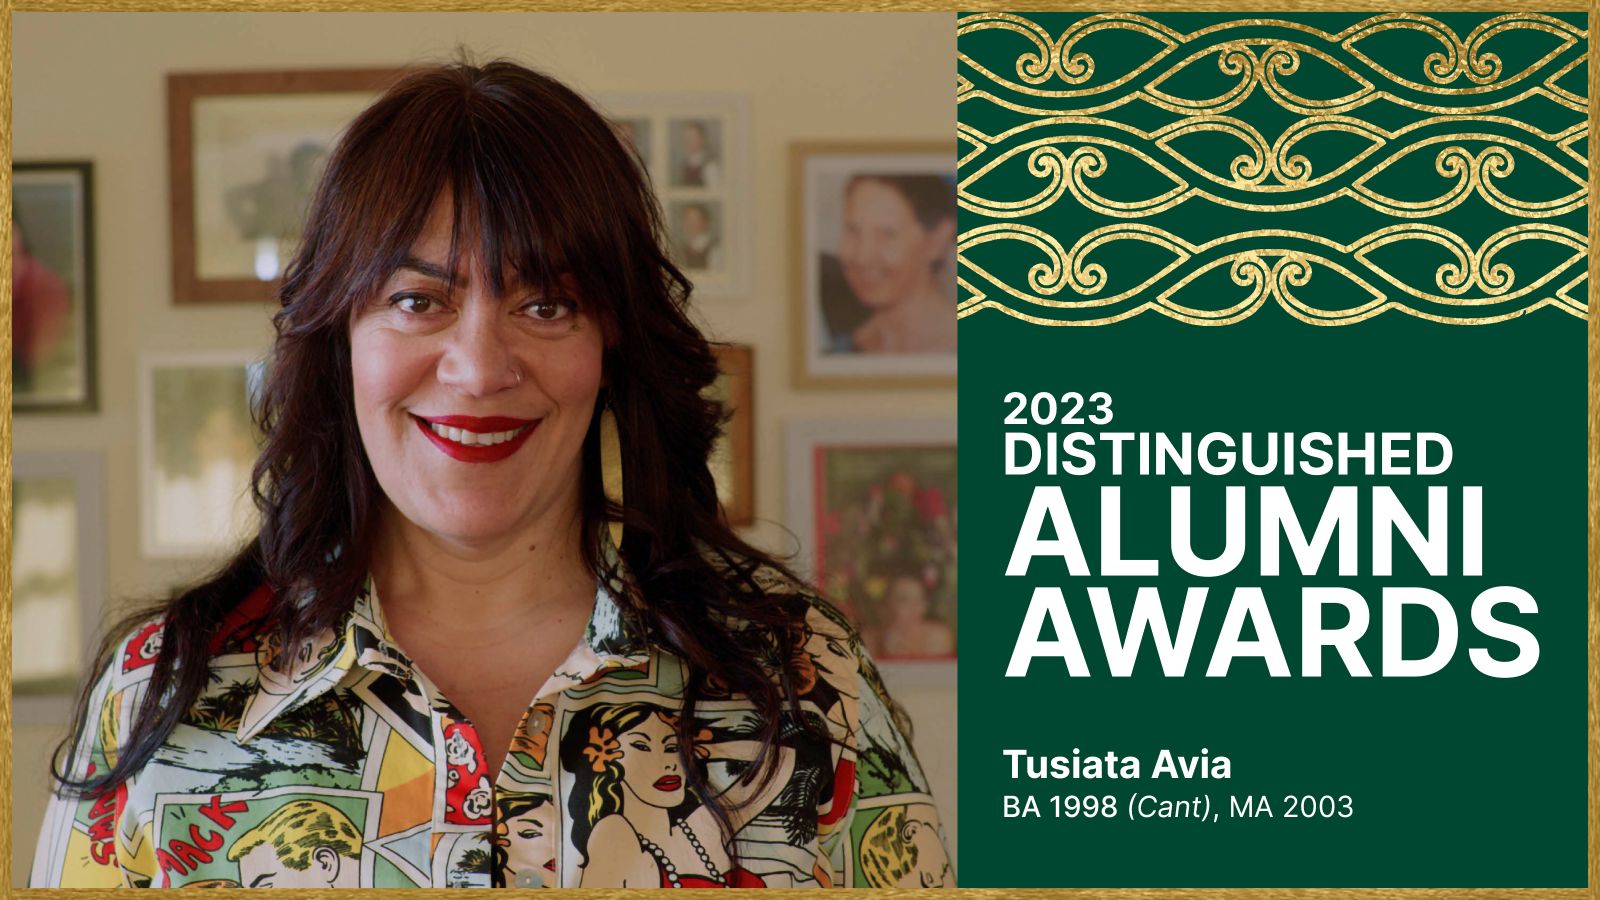 2023 Distinguished Alumni Award winner, Tusiata Avia